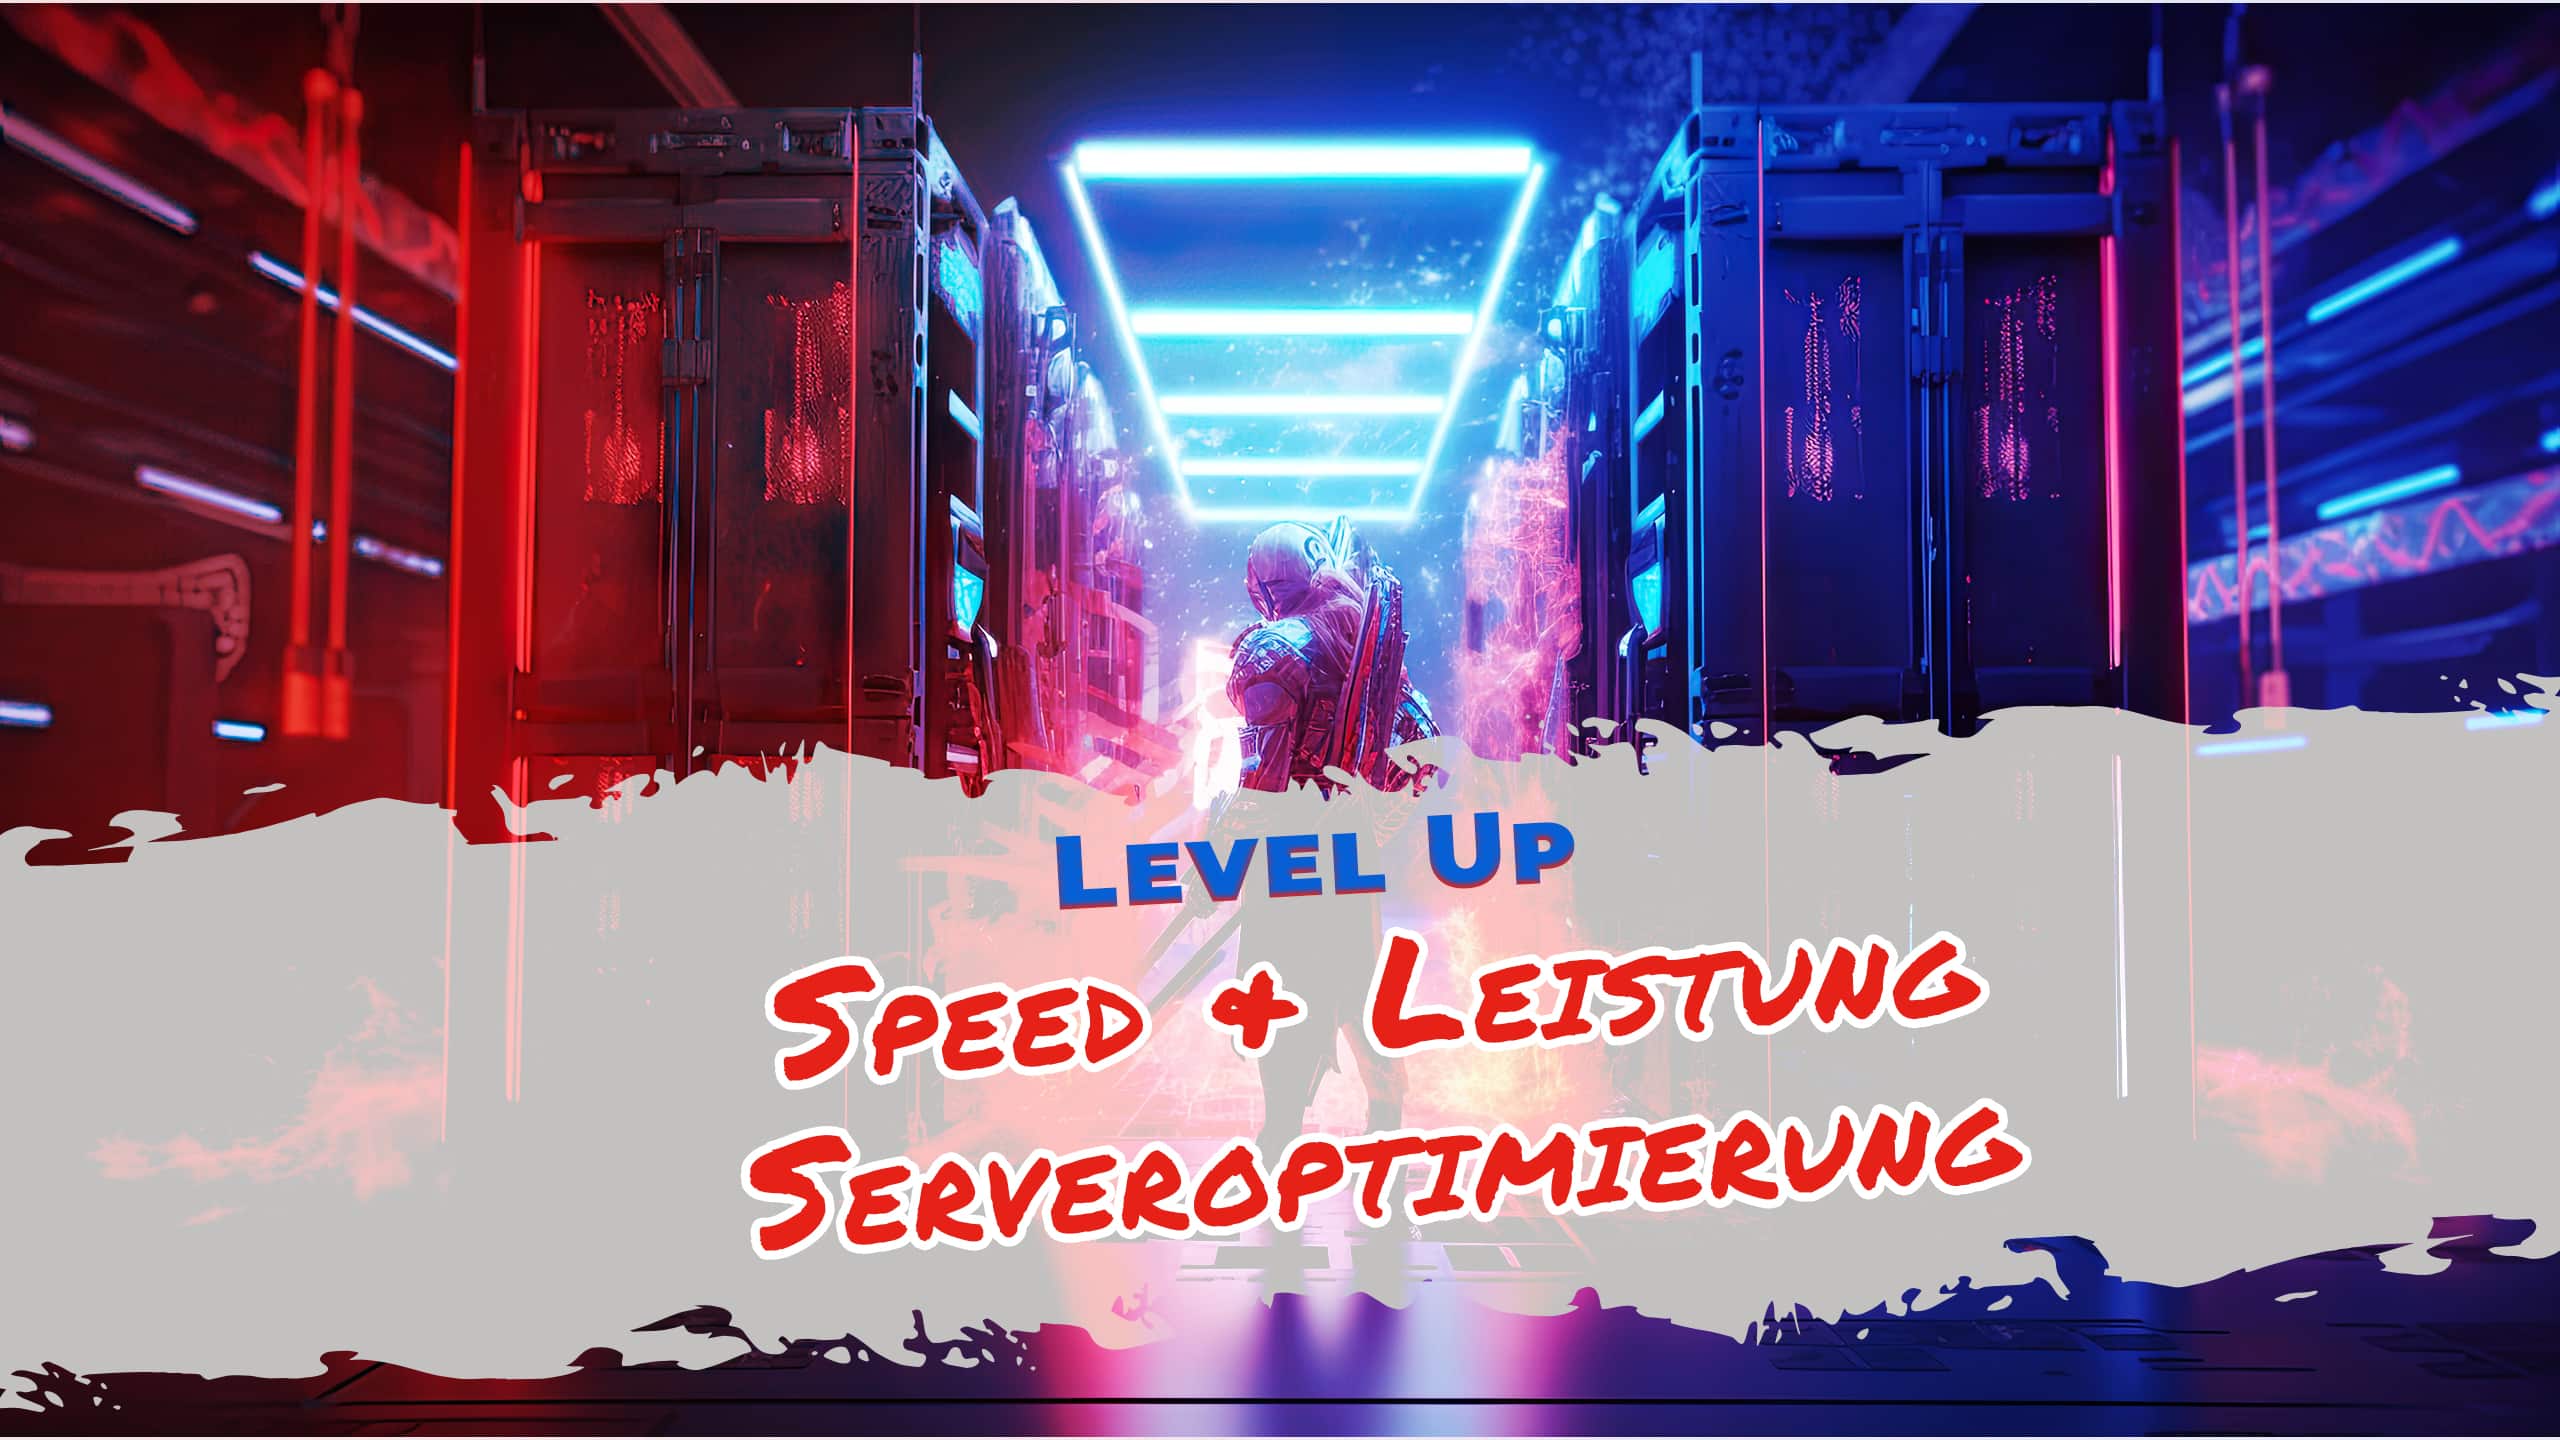 Level Up für Ihren Gaming-Blog: Geschwindigkeit und Leistung durch Serveroptimierung steigern